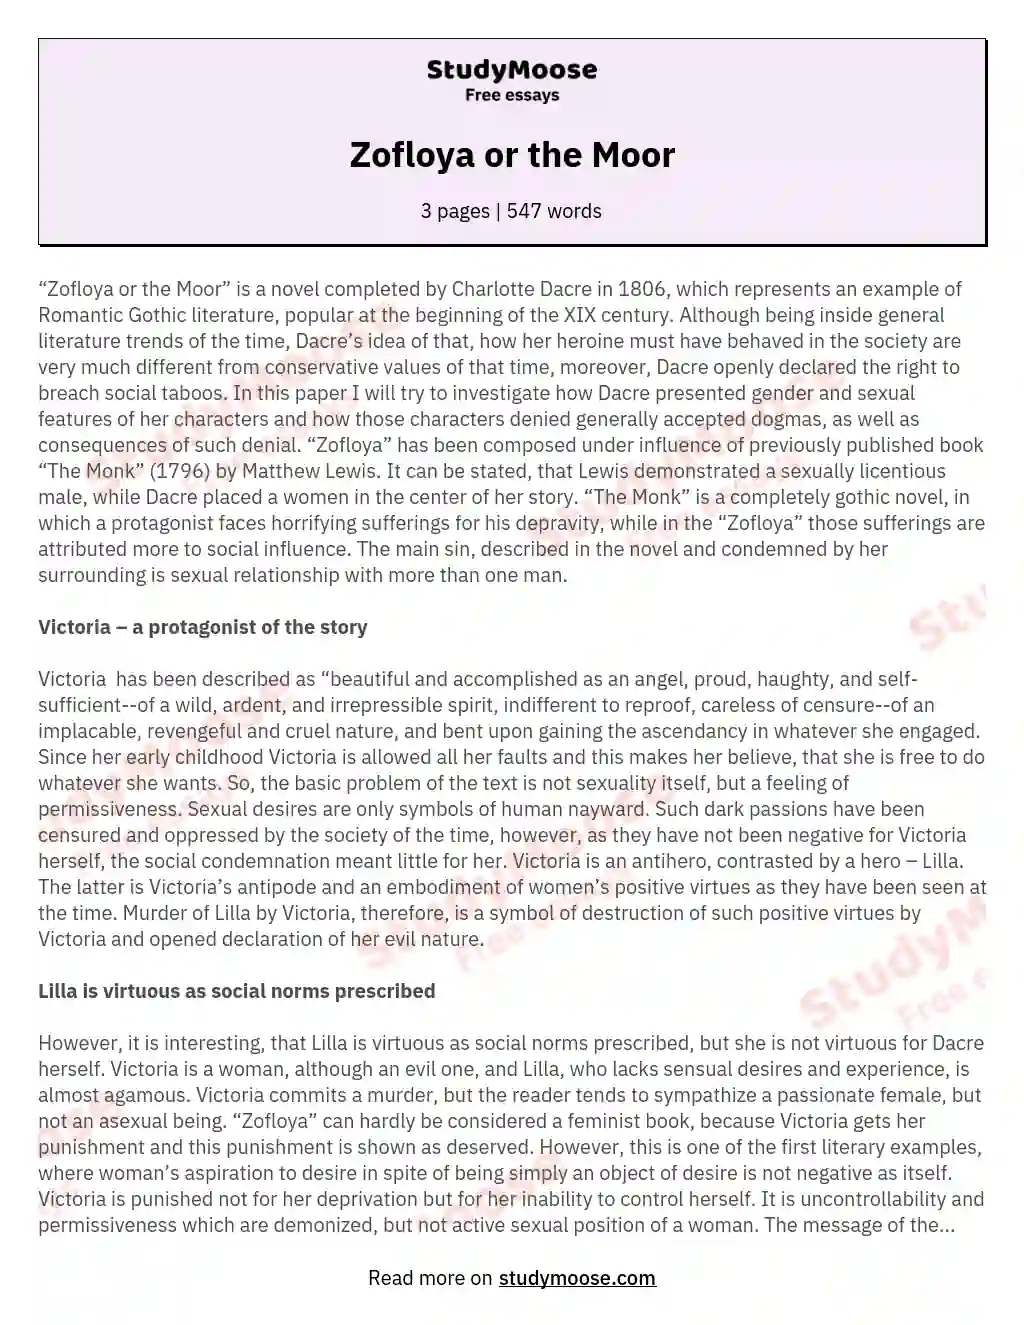 Zofloya or the Moor essay